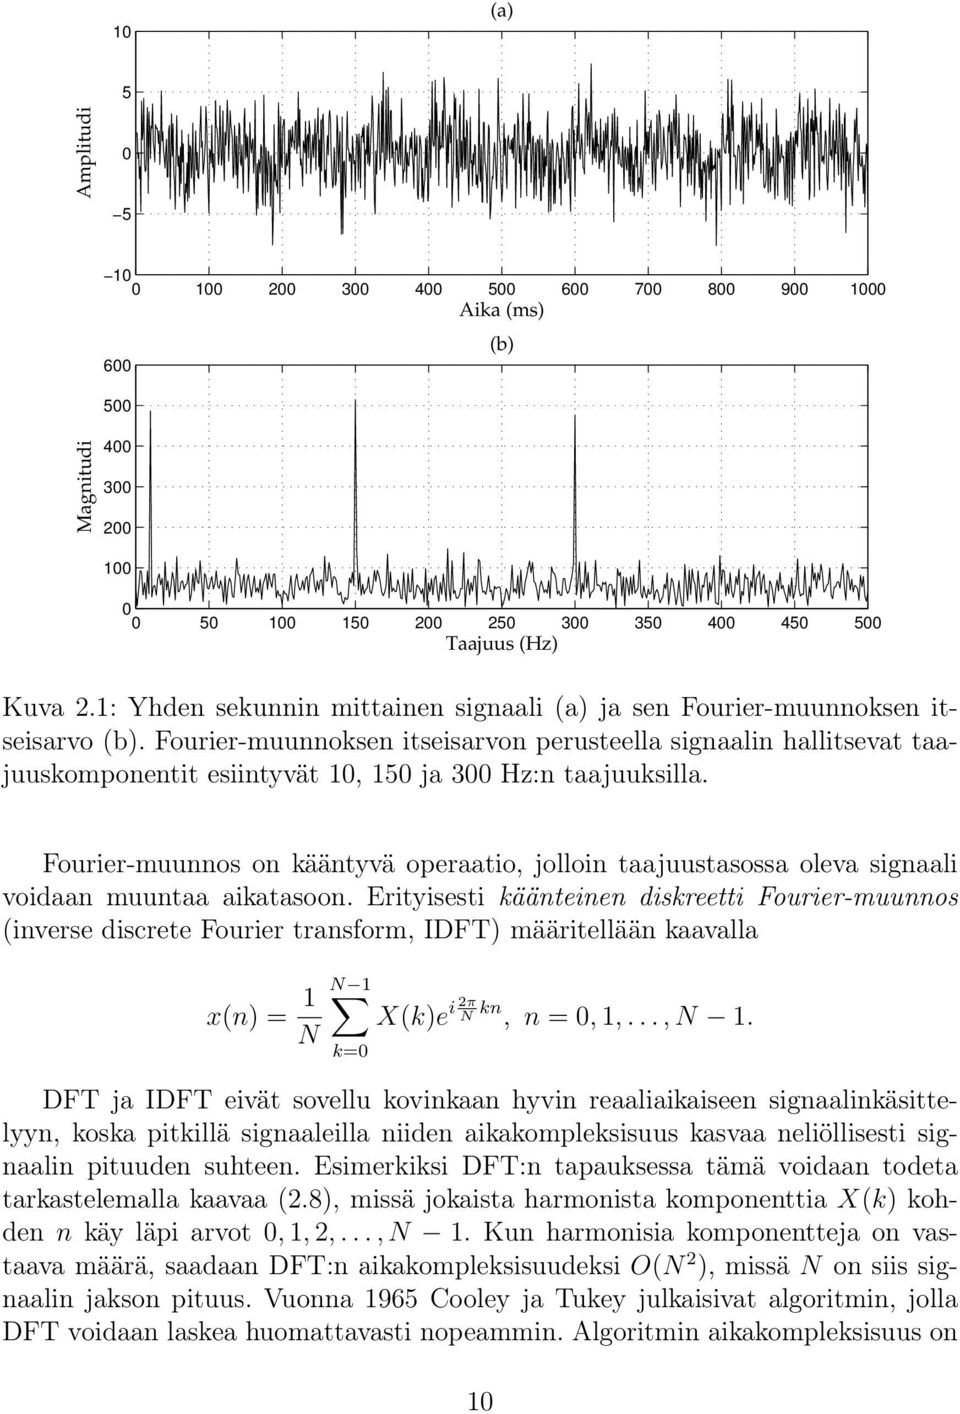 Fourier-muunnoksen itseisarvon perusteella signaalin hallitsevat taajuuskomponentit esiintyvät 10, 150 ja 300 Hz:n taajuuksilla.